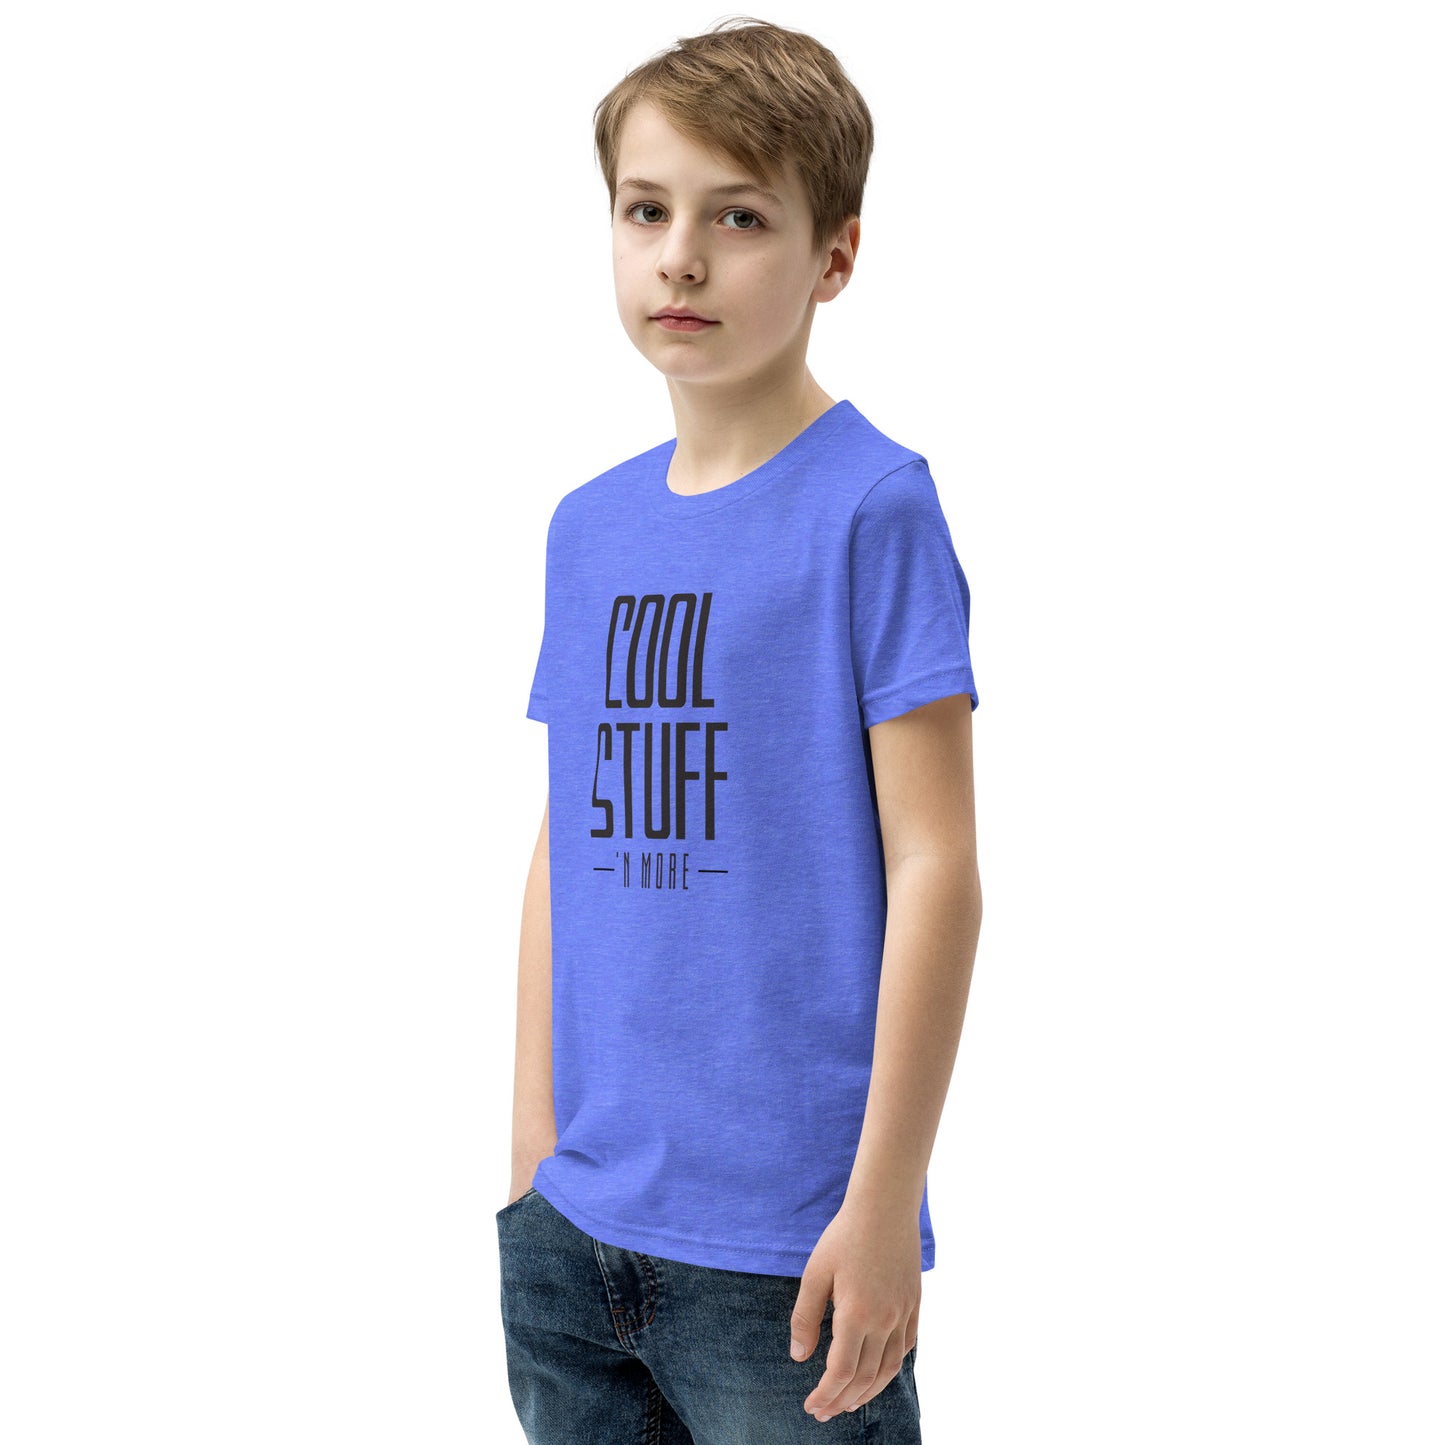 Cool Stuff Short Sleeve T-Shirt - Blue/Mustard